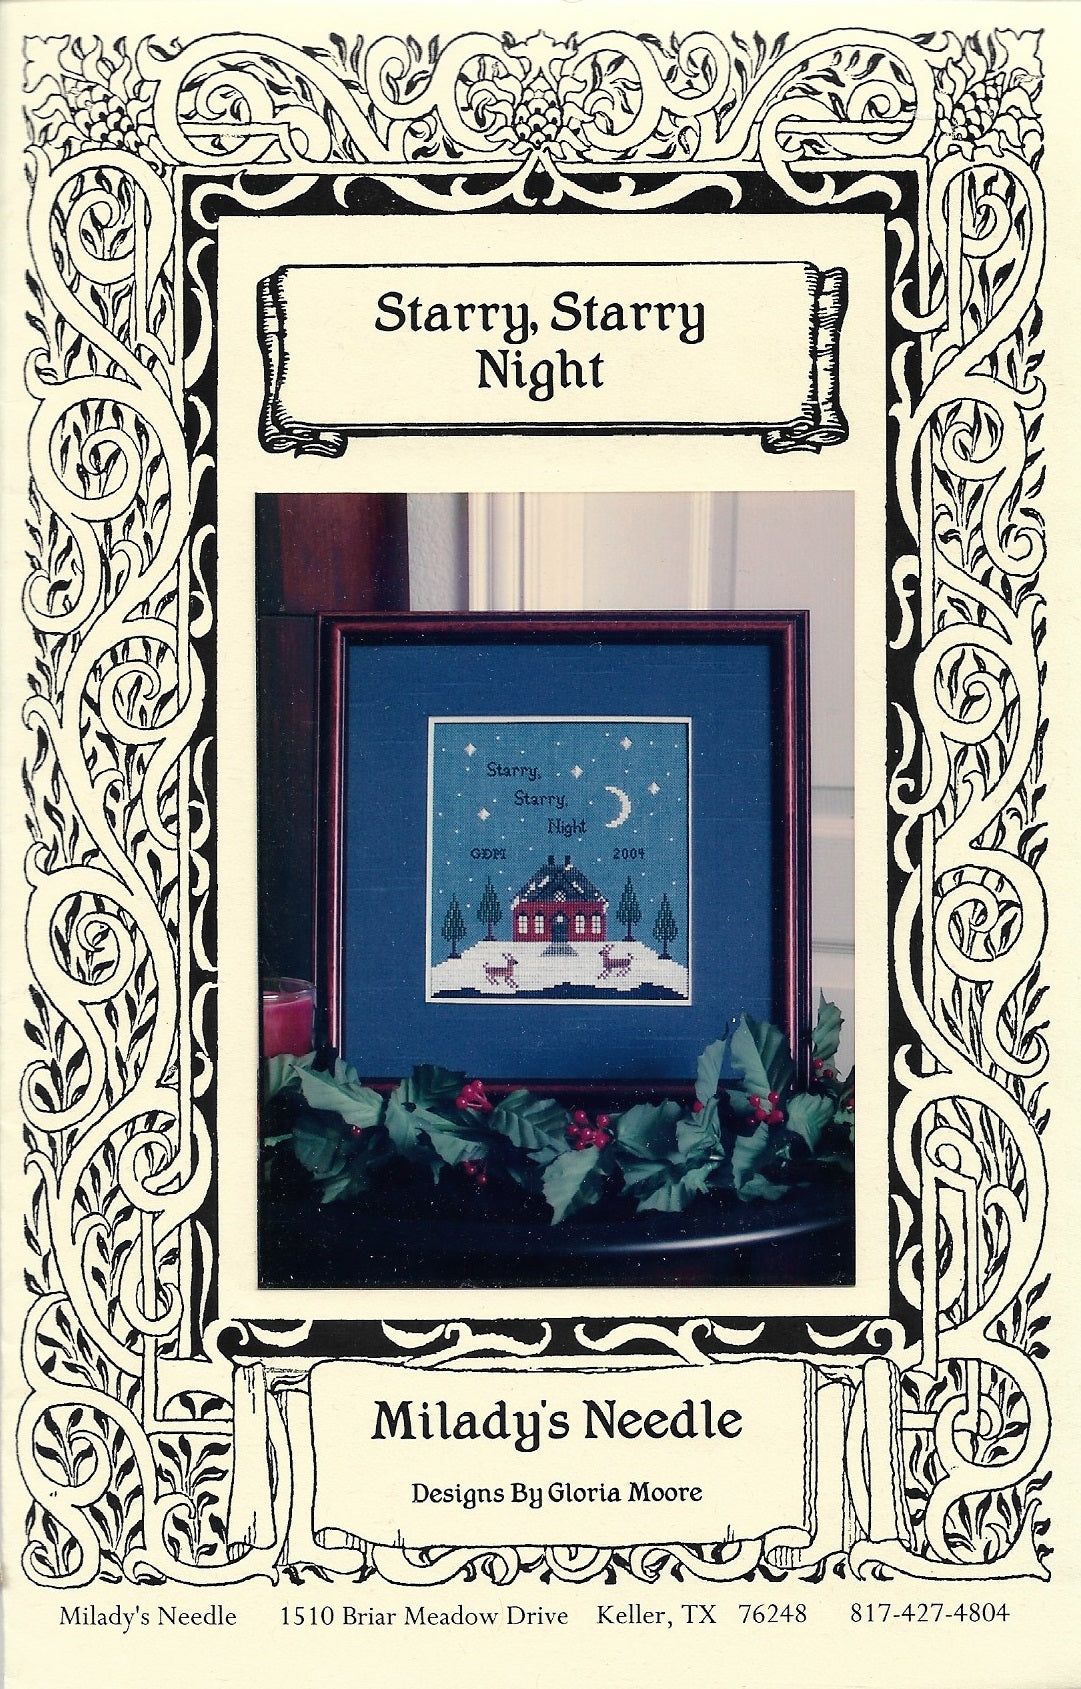 Milady's Needle Starry, Starry Night cross stitch pattern